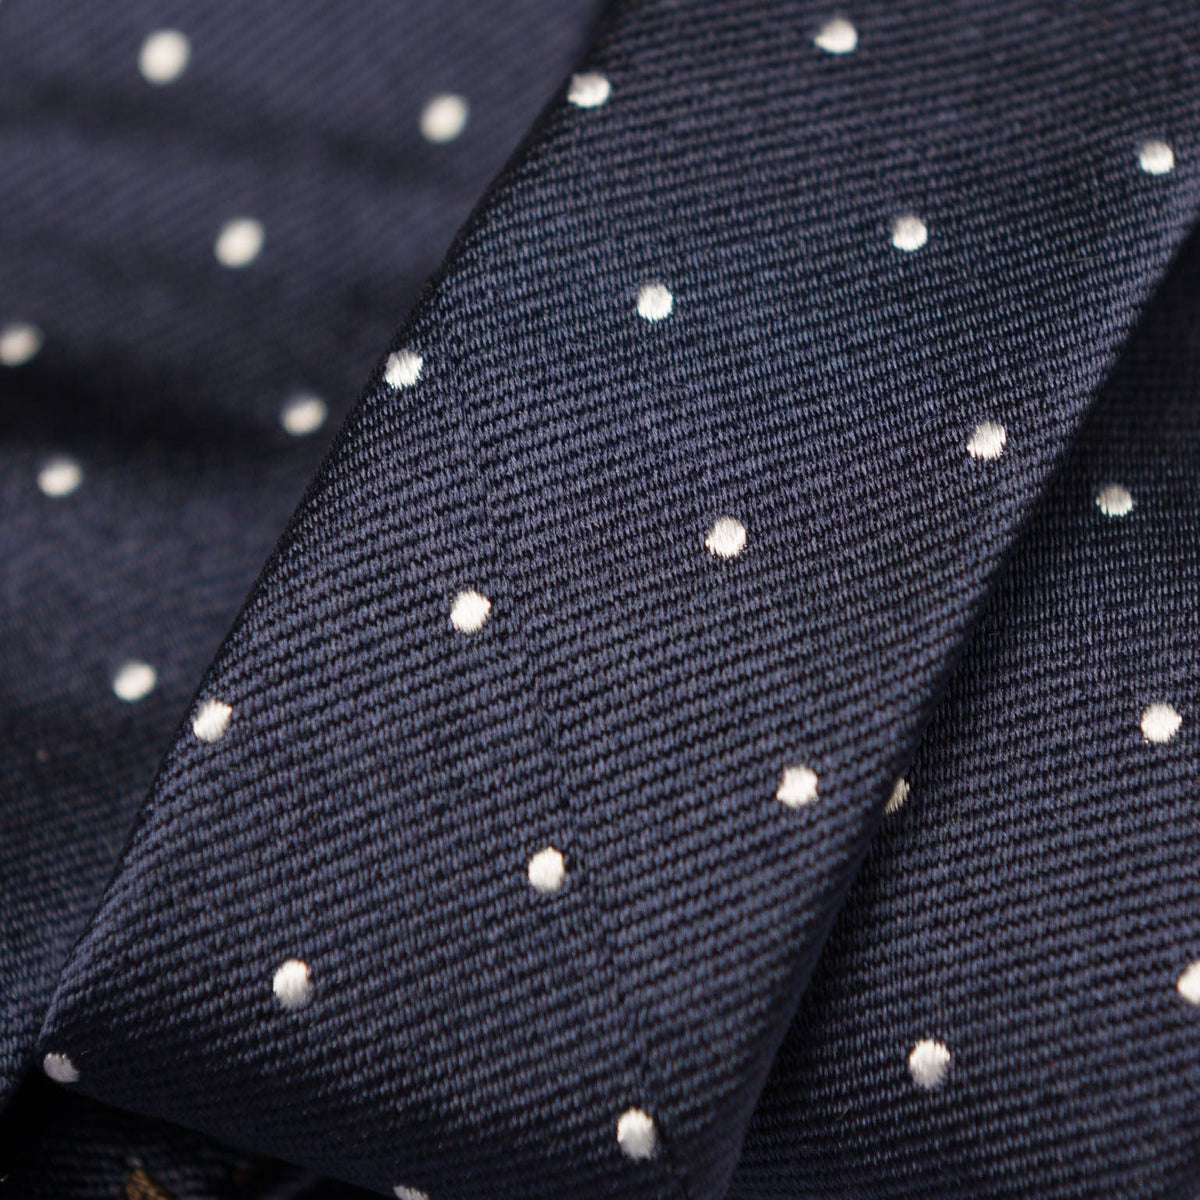 Extra Long Navy Blue Italian Silk Tie - Polka Dots